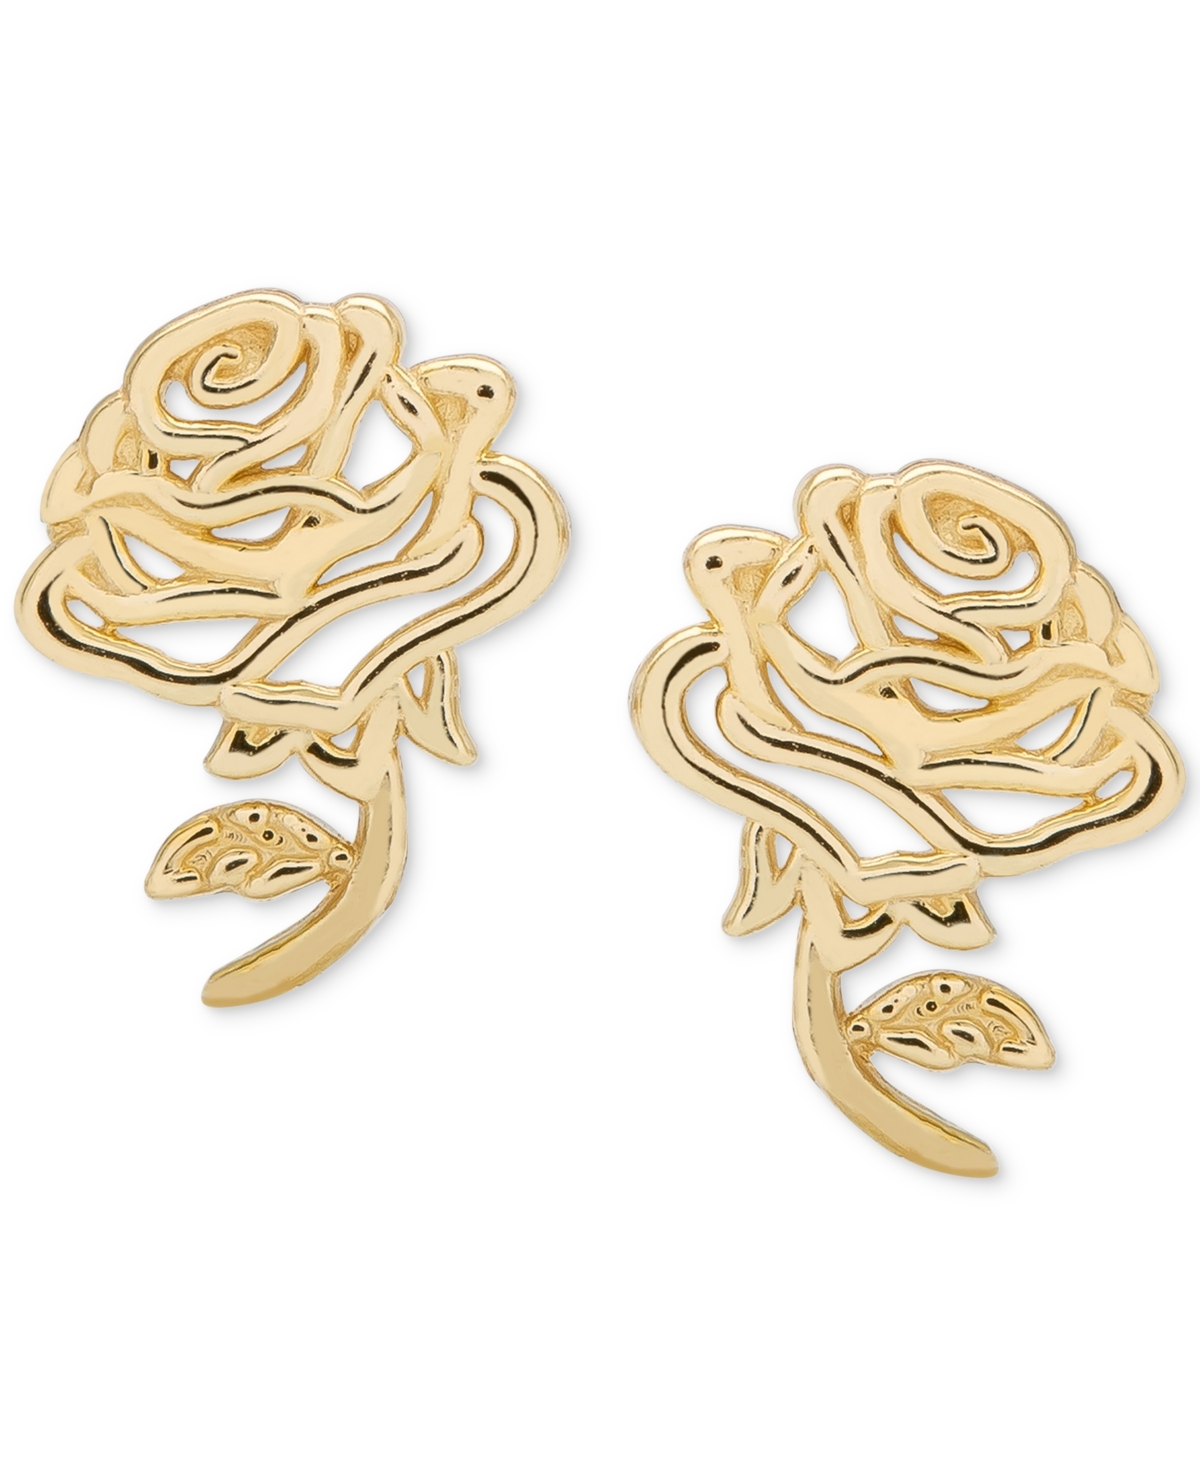 Children's Belle Rose Stud Earrings in 14k Gold - Yellow Gold